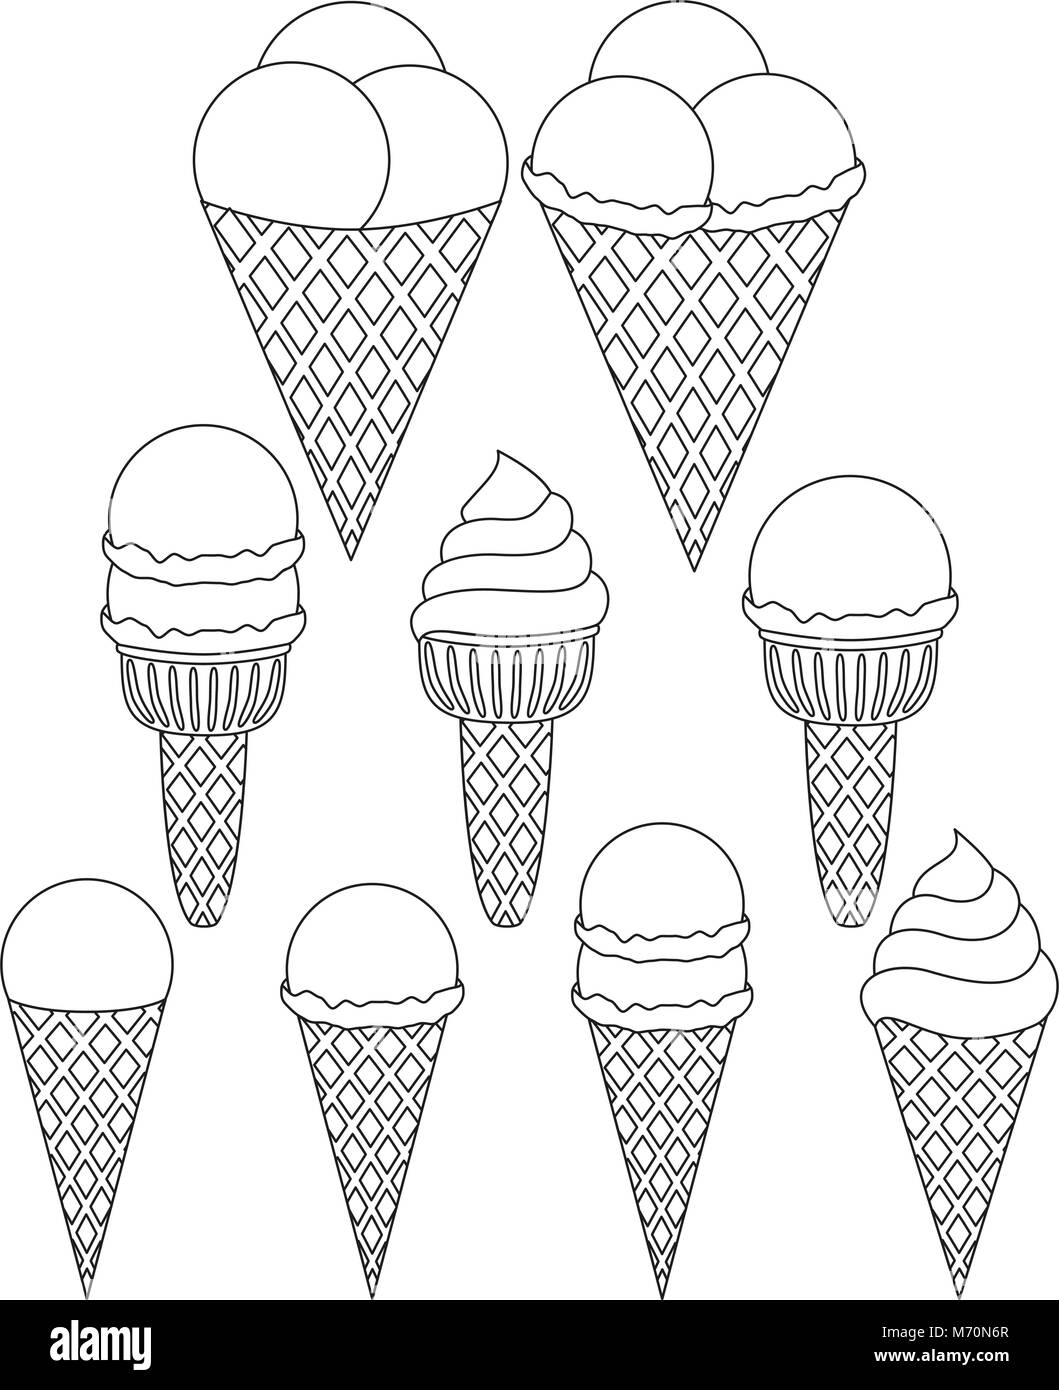 Le noir et blanc Ice cream cone icon set 9 éléments. La page de coloriage pour adultes et enfants. Fast food de l'été illustration vectorielle de la carte cadeau, circulaire, Illustration de Vecteur